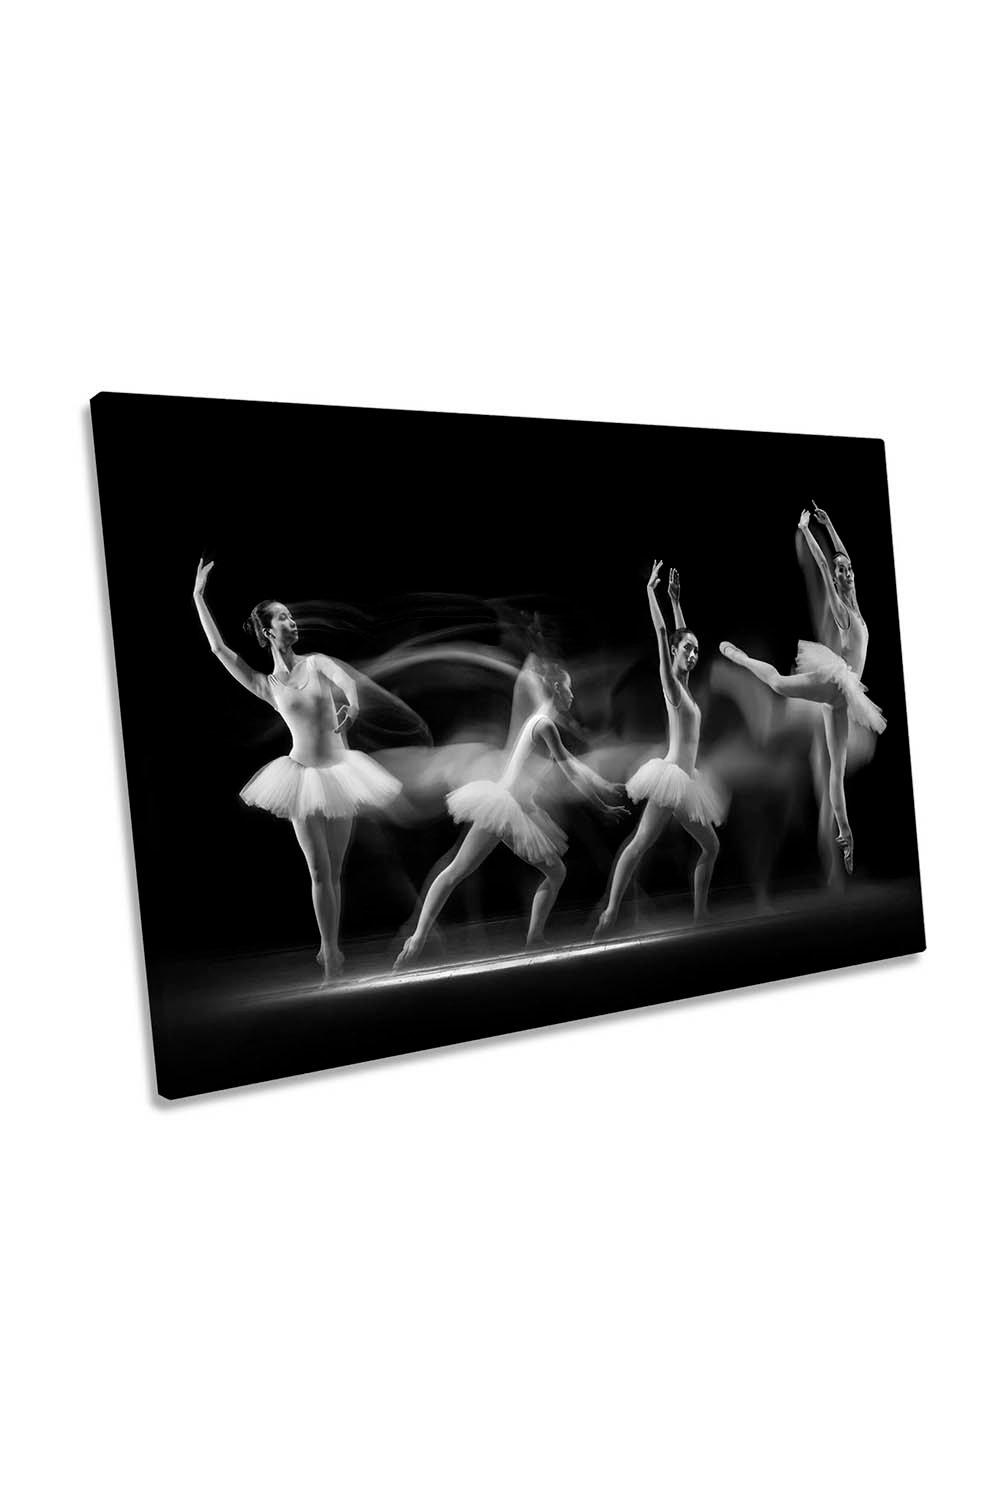 Ballerina Art Wave Dancer Canvas Wall Art Picture Print